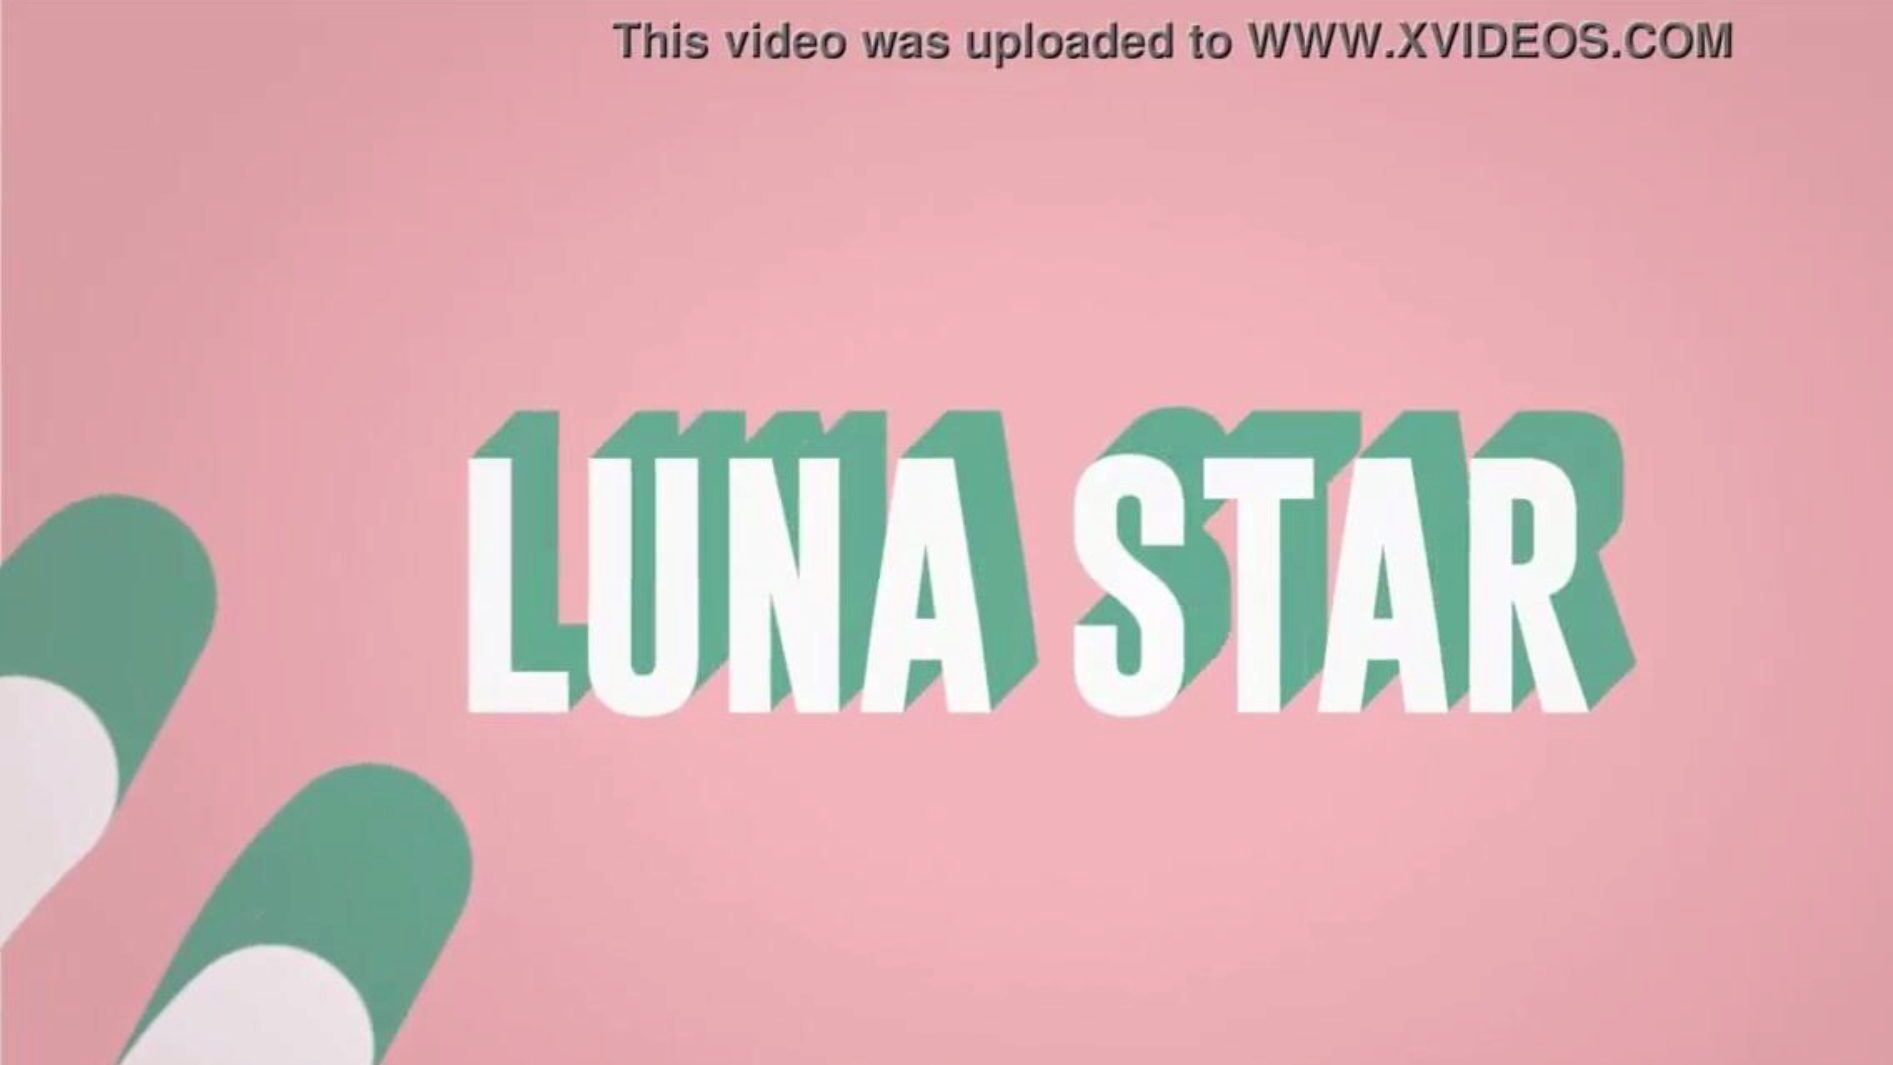 det er min skide wifi: brazzers-episode med luna-stjerne; se fuldt ud på www.zzfull.com/luna